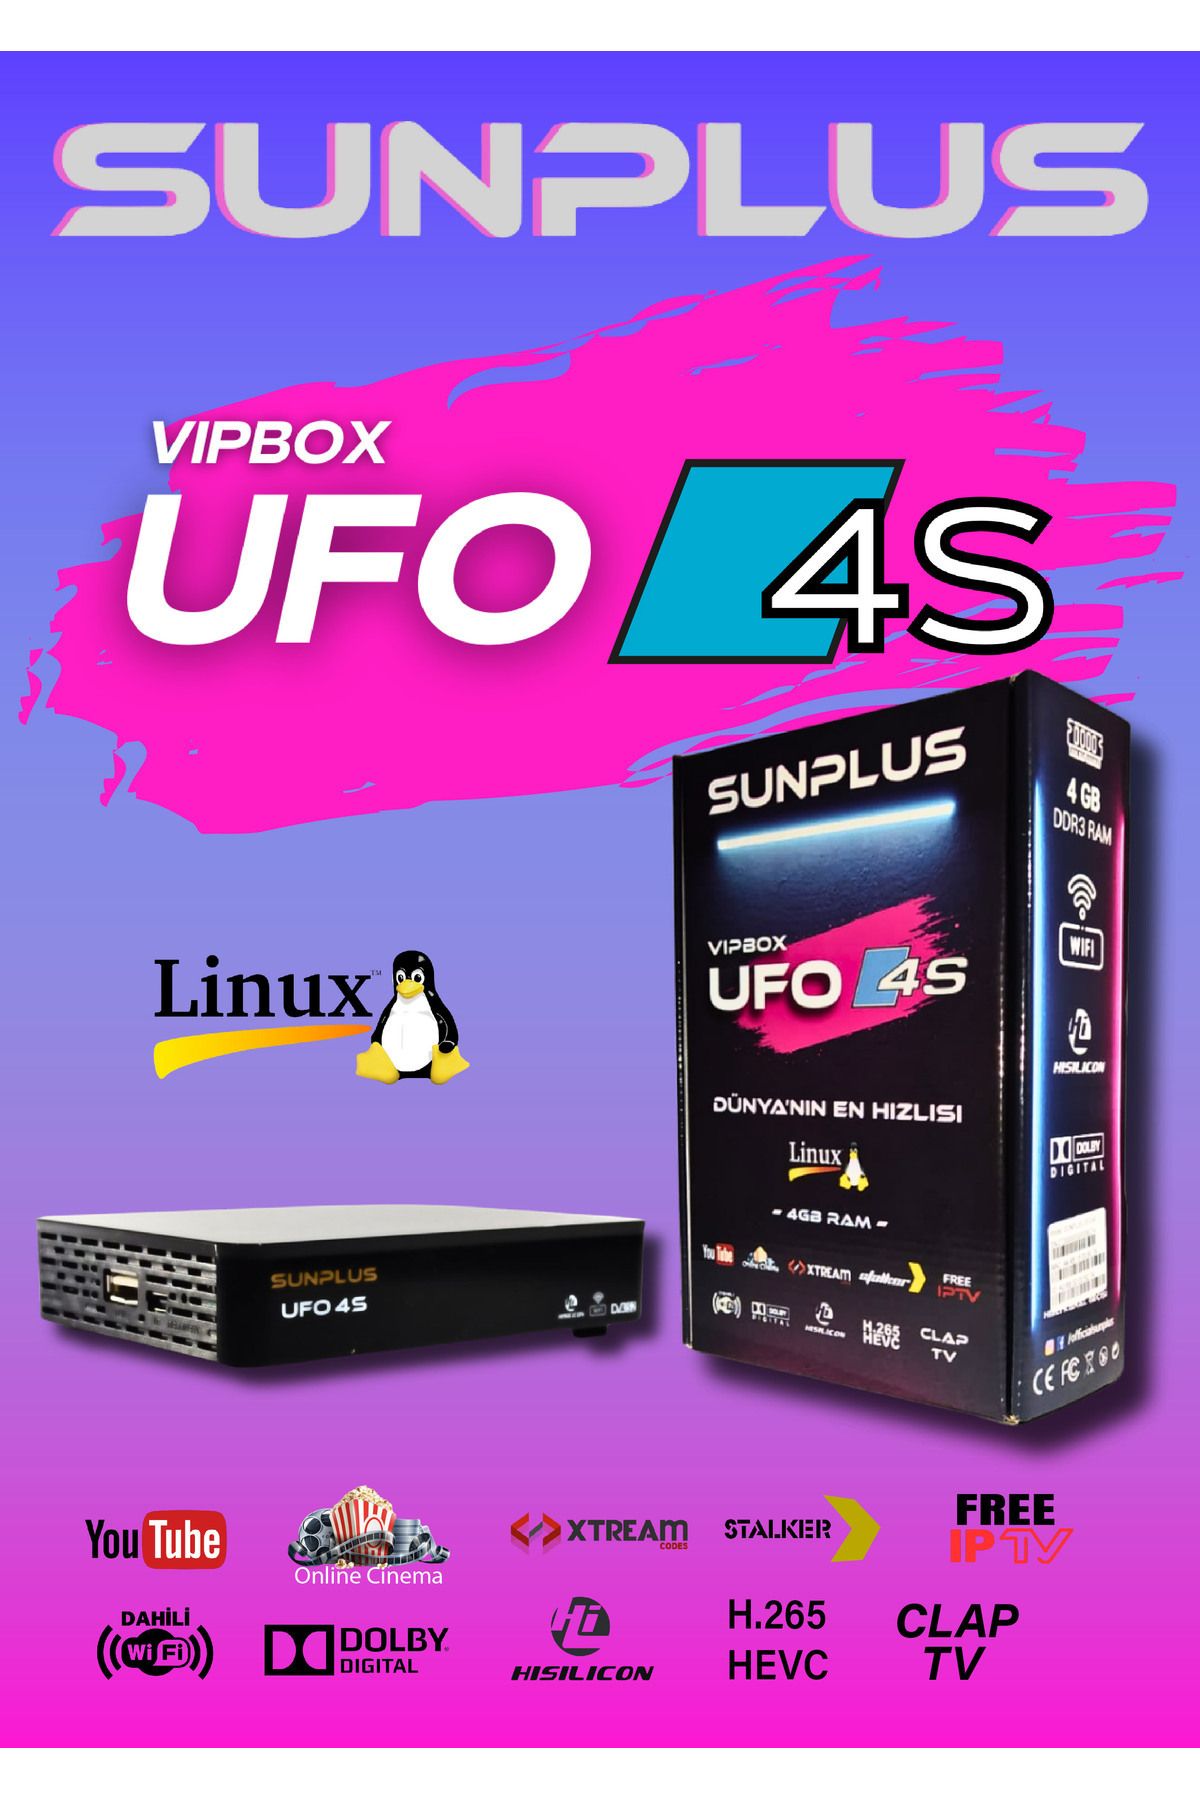 Sunplus Vıpbox Ufo 4S Uydu Alıcısı